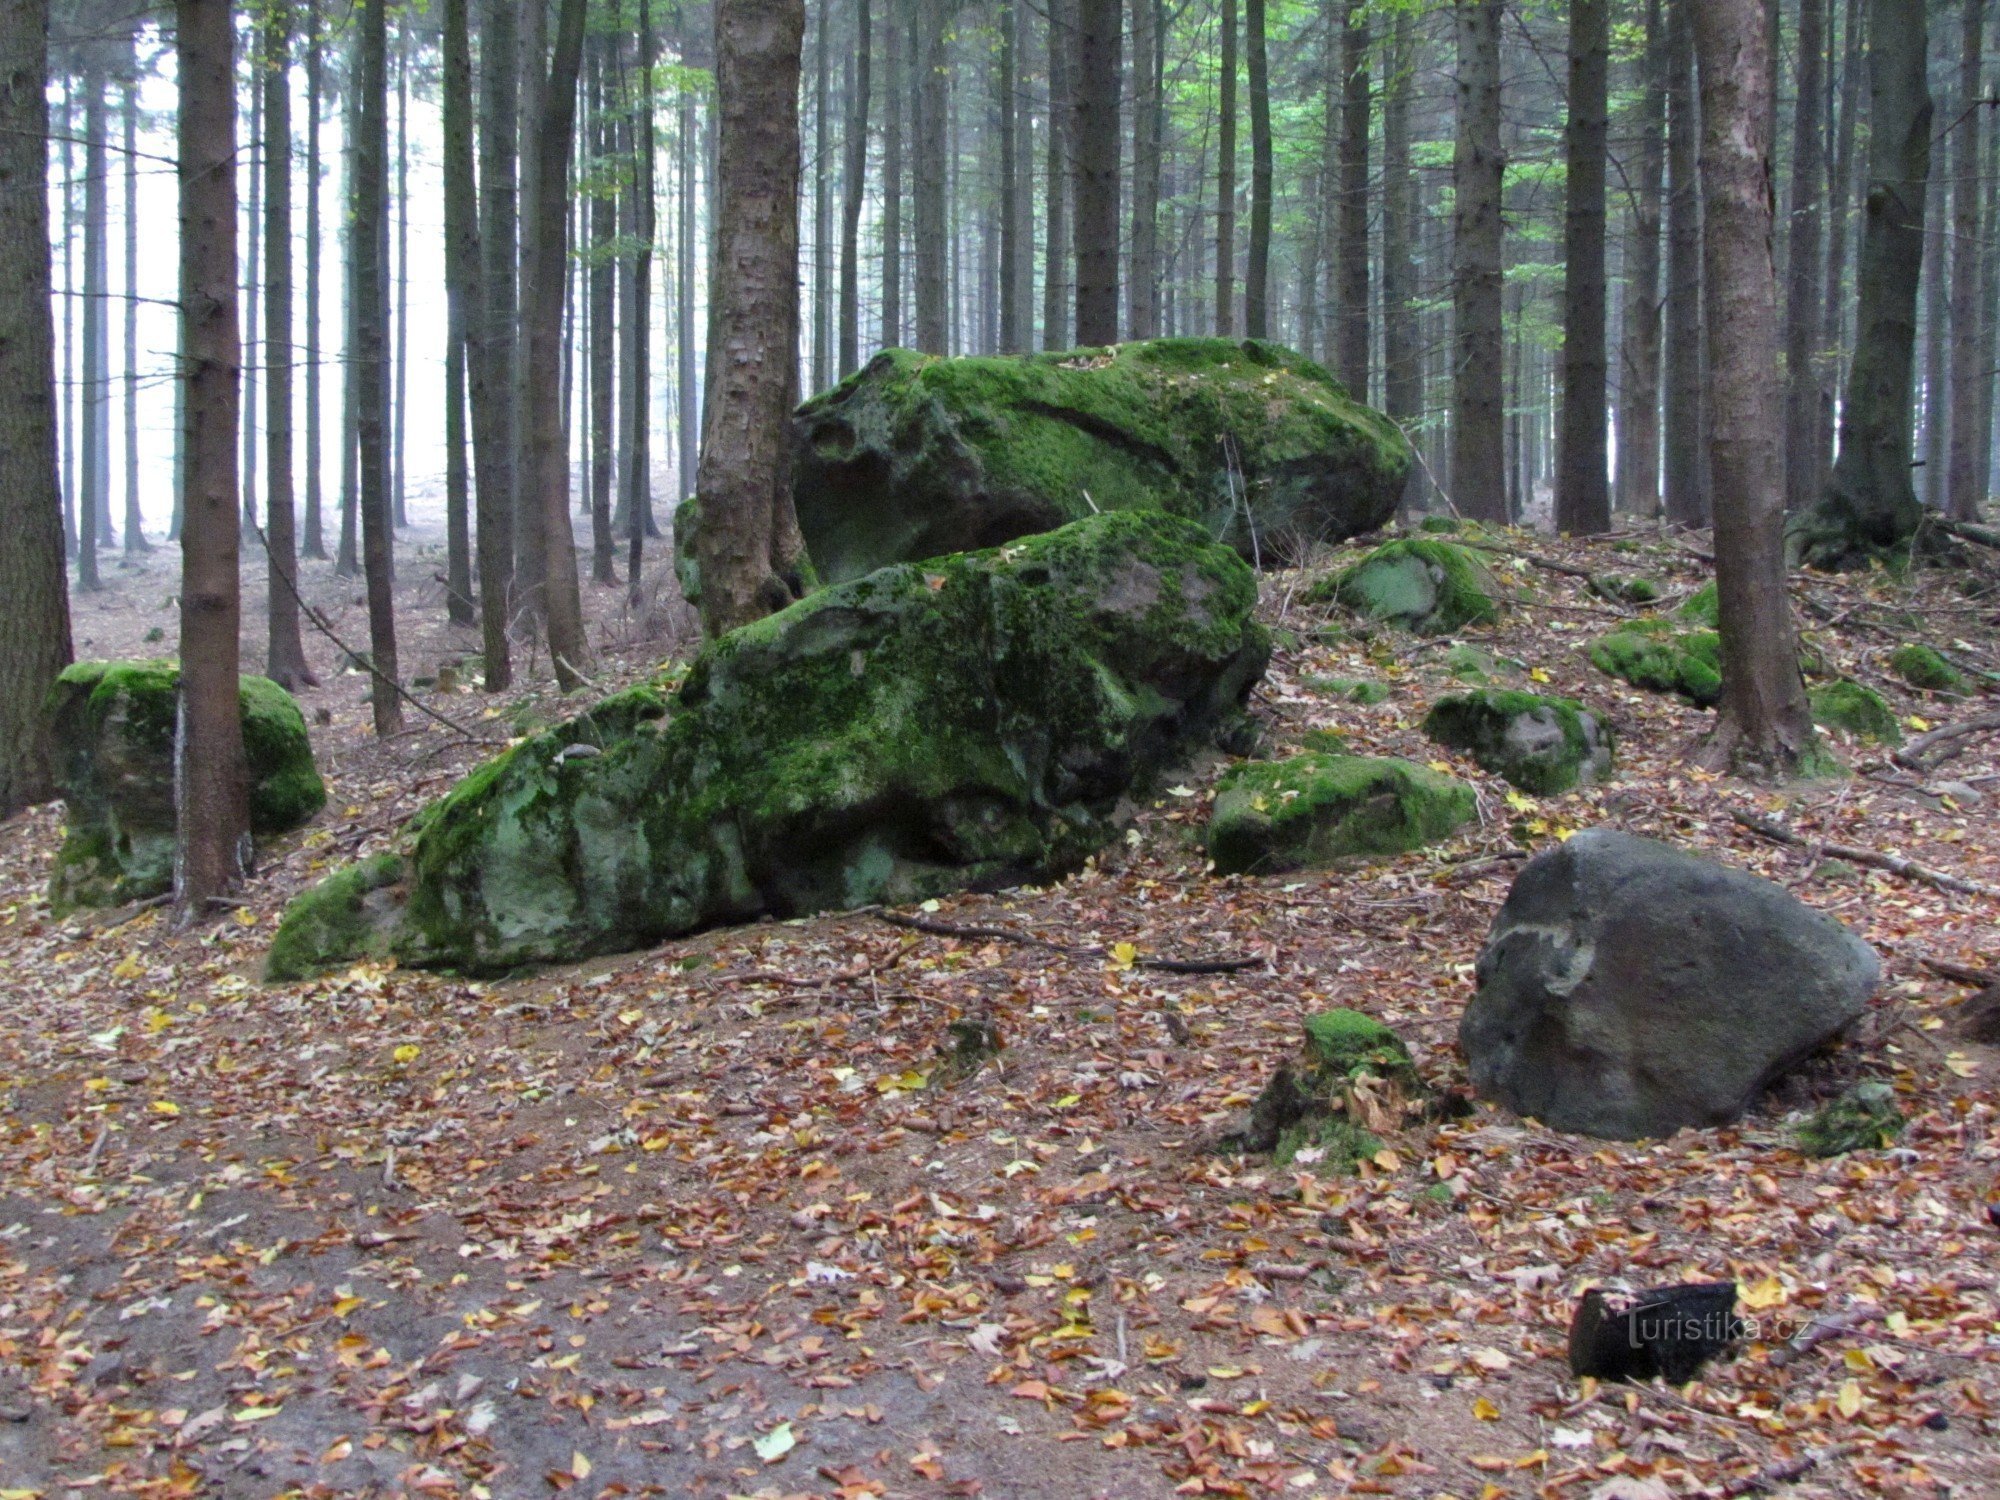 Kuželek - stenar på toppen av åsen